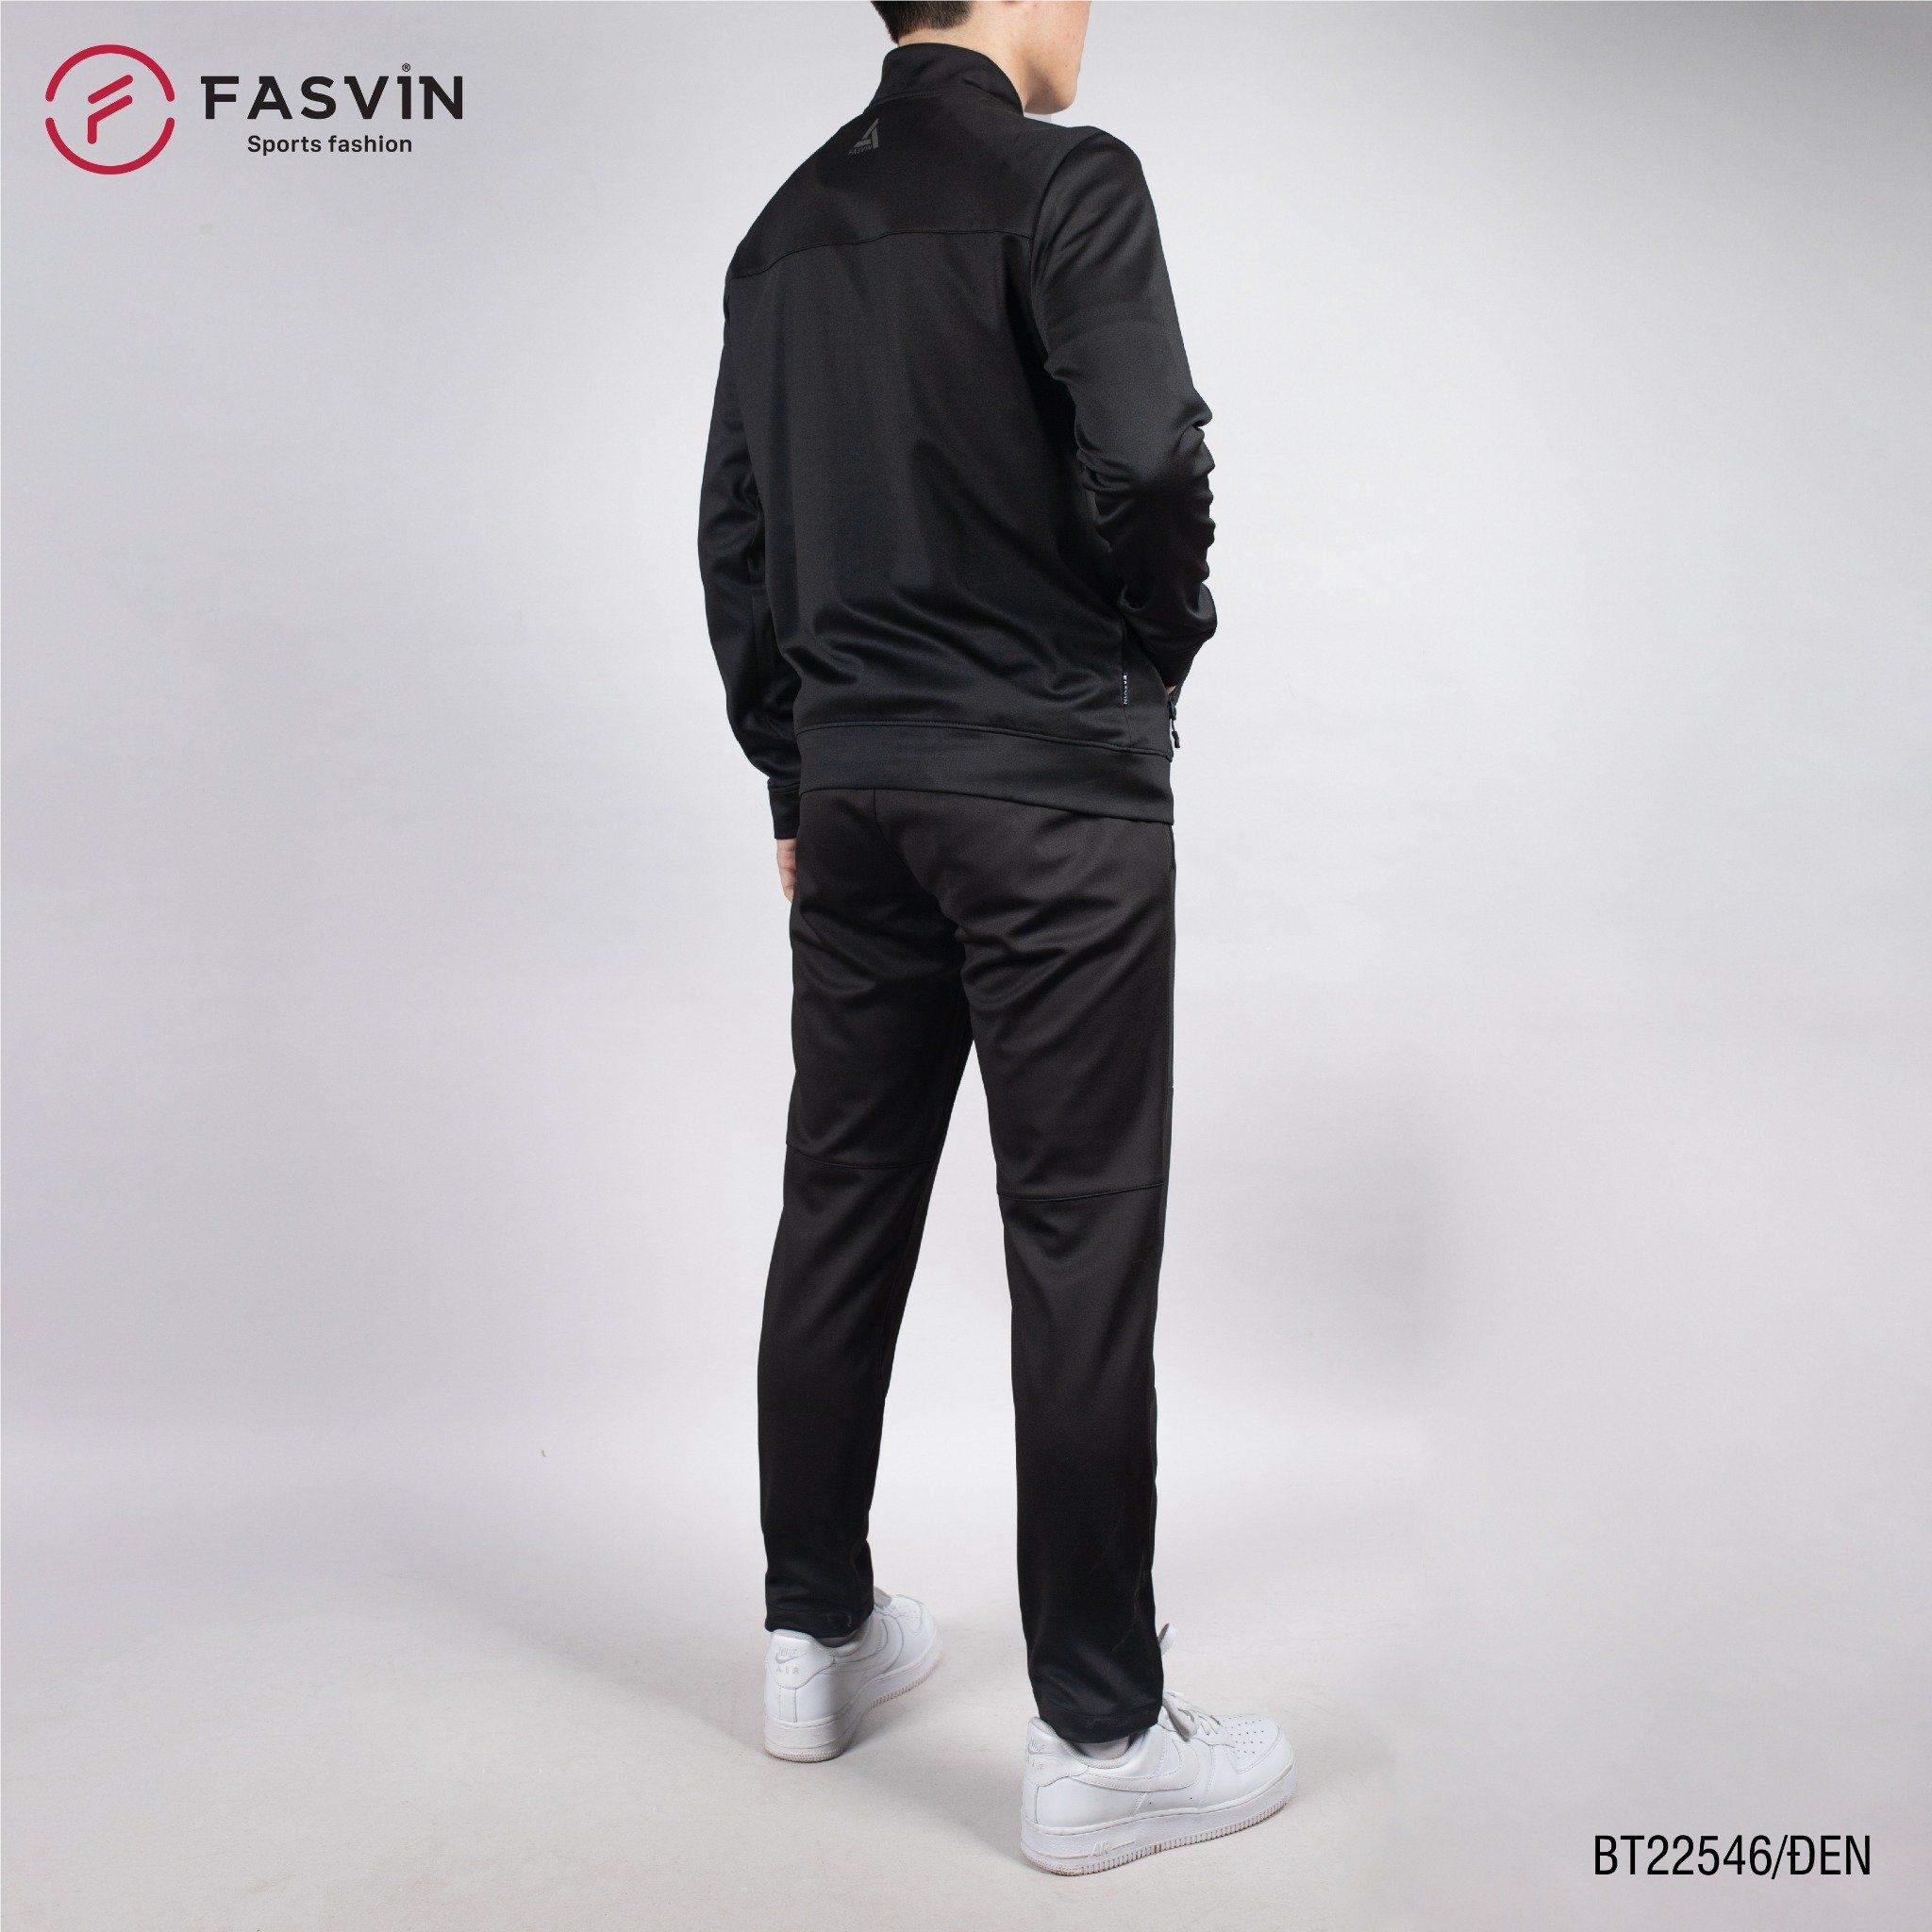  Bộ quần áo thể thao nam Fasvin vải thun 01 lớp co giãn thoải mái BT22546 